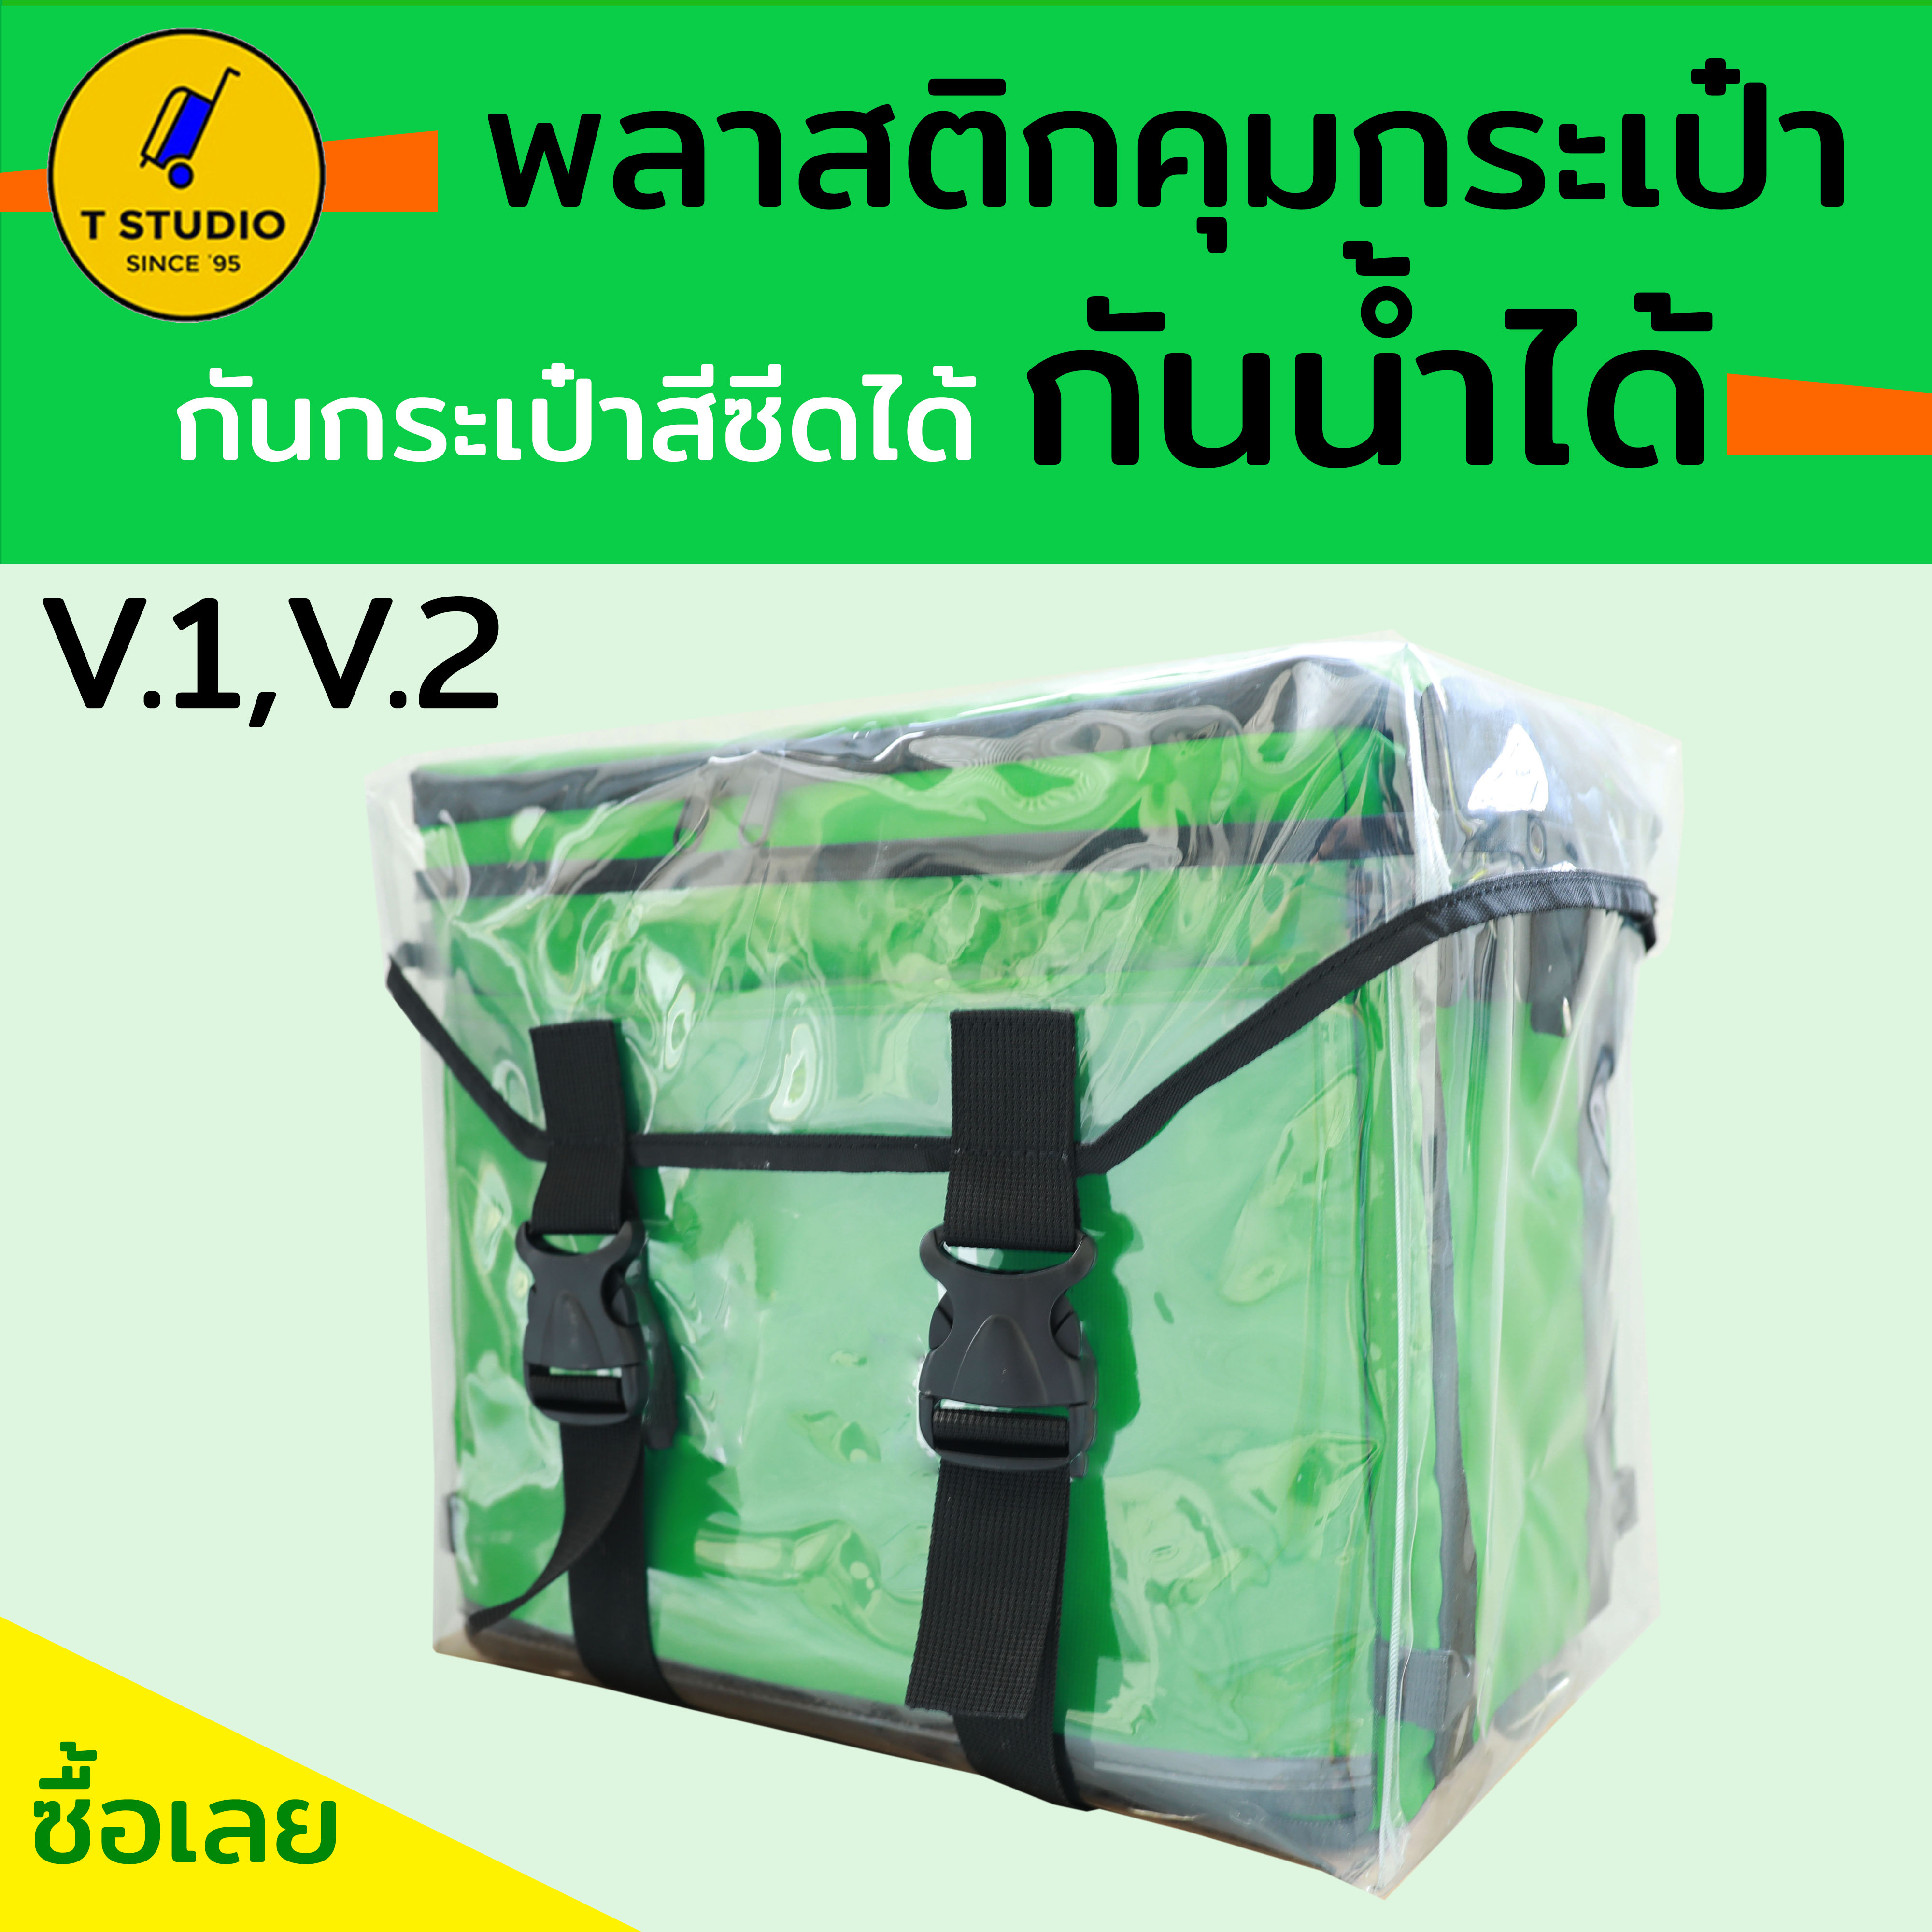 Tstudio กระเป๋าพลาสติกกันน้ำ กระเป๋าG**b driver พลาสติกกระเป๋าส่งอาหาร กันน้ำ กันน้ำได้แน่นอน 100% พลาสติกคลุมกระเป๋า ผ้าคลุมกระเป๋าส่งอาหาร V1V2